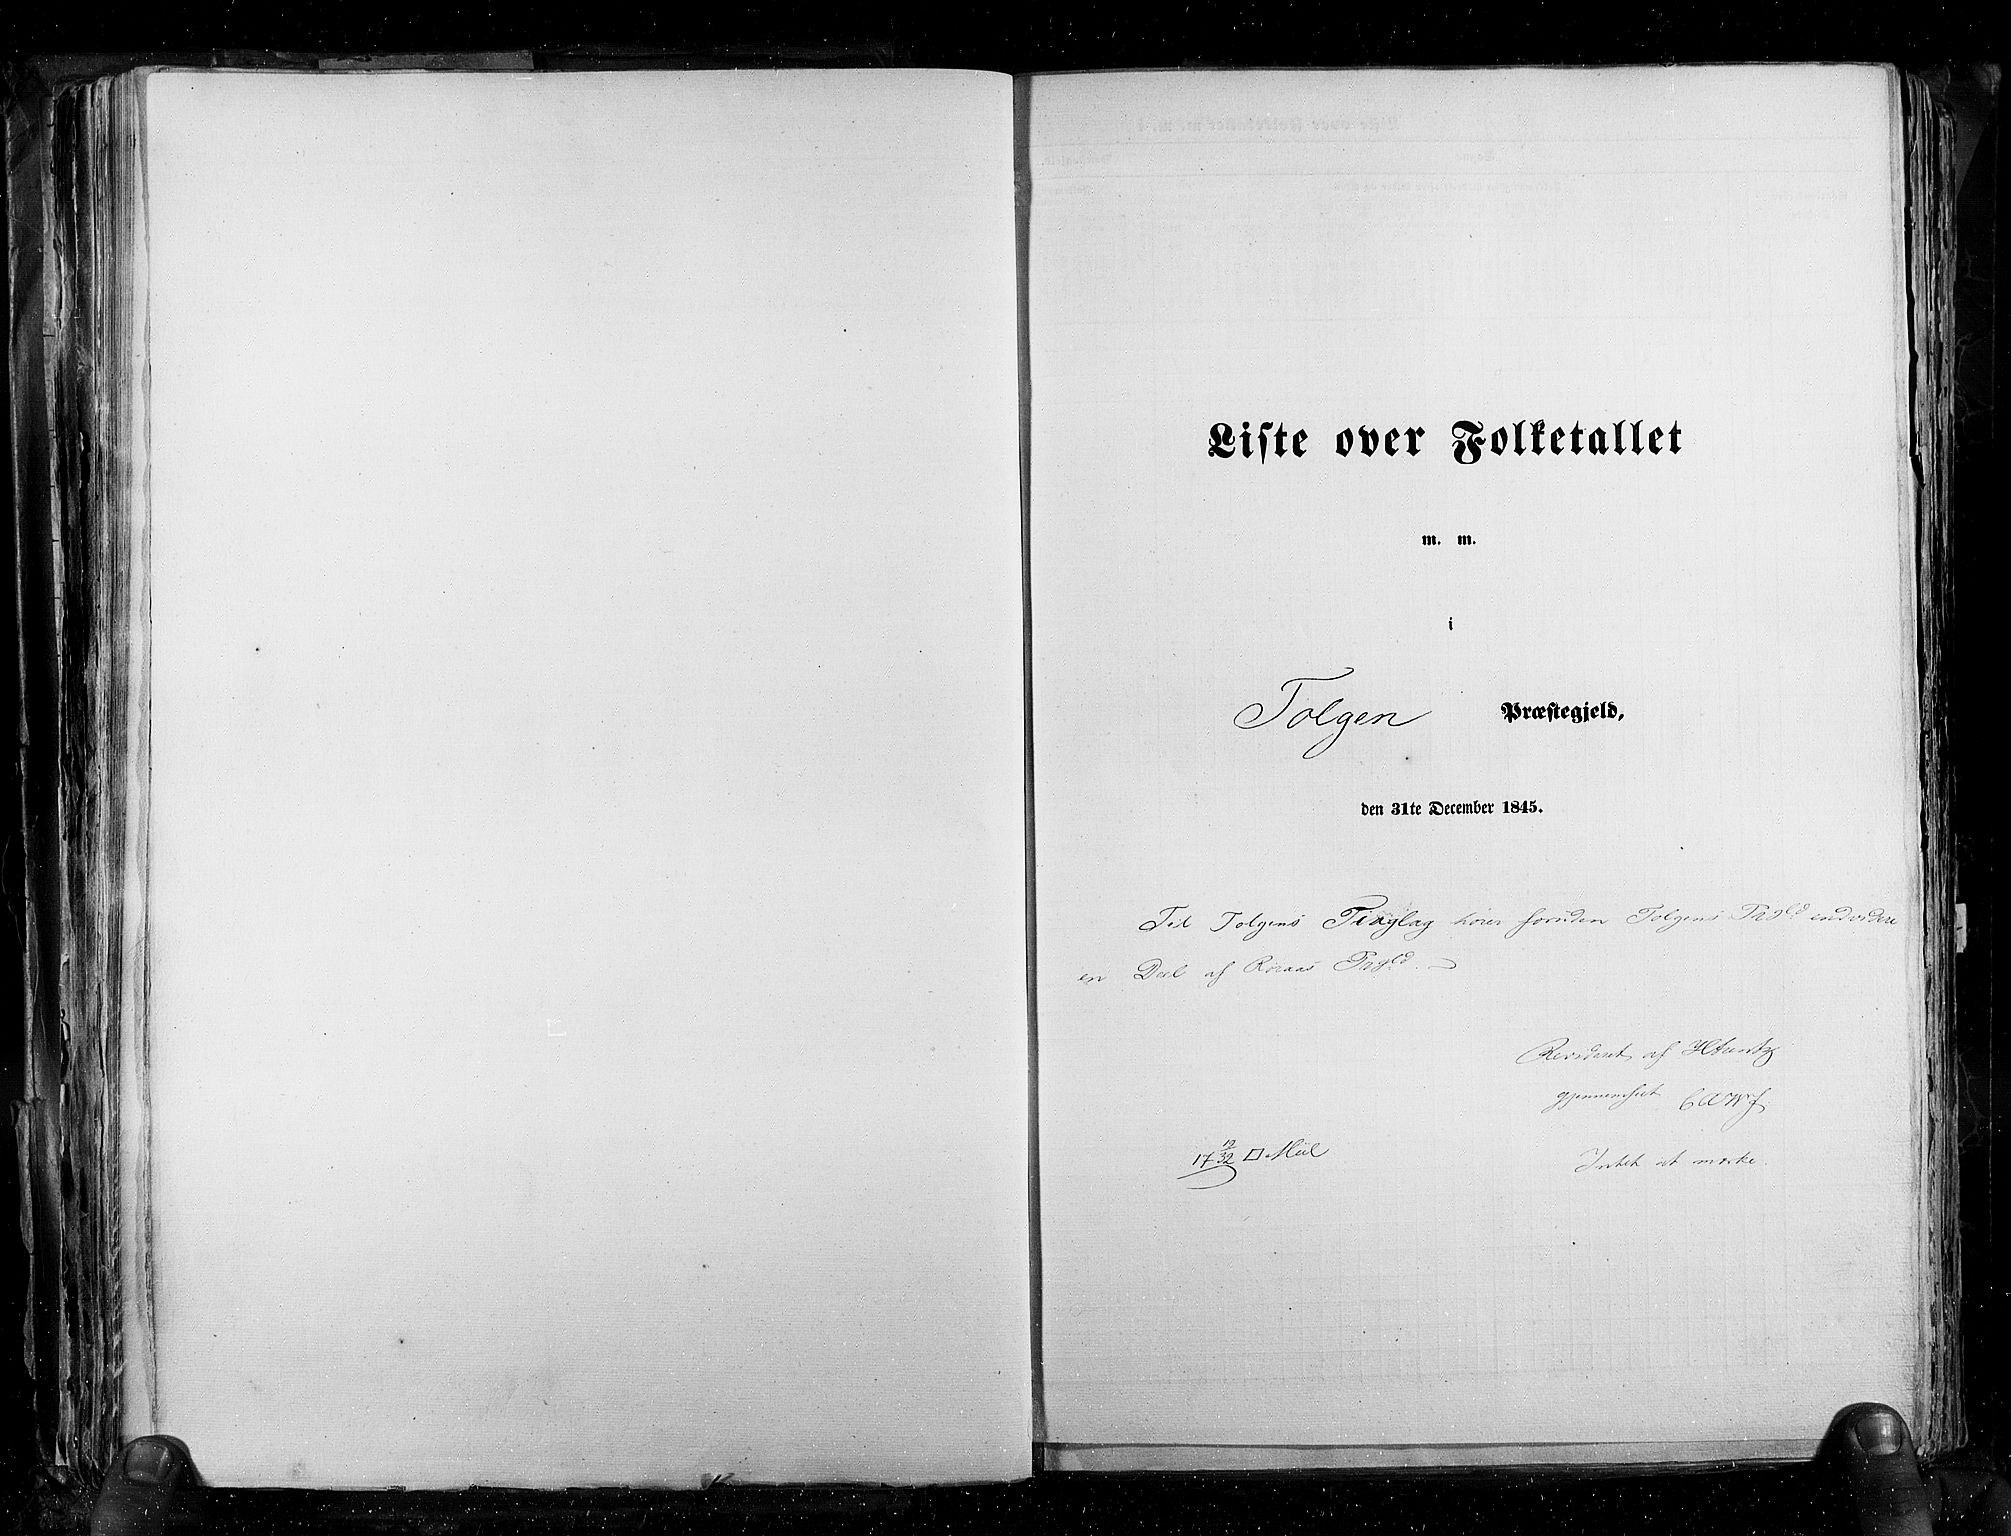 RA, Folketellingen 1845, bind 3: Hedemarken amt og Kristians amt, 1845, s. 156